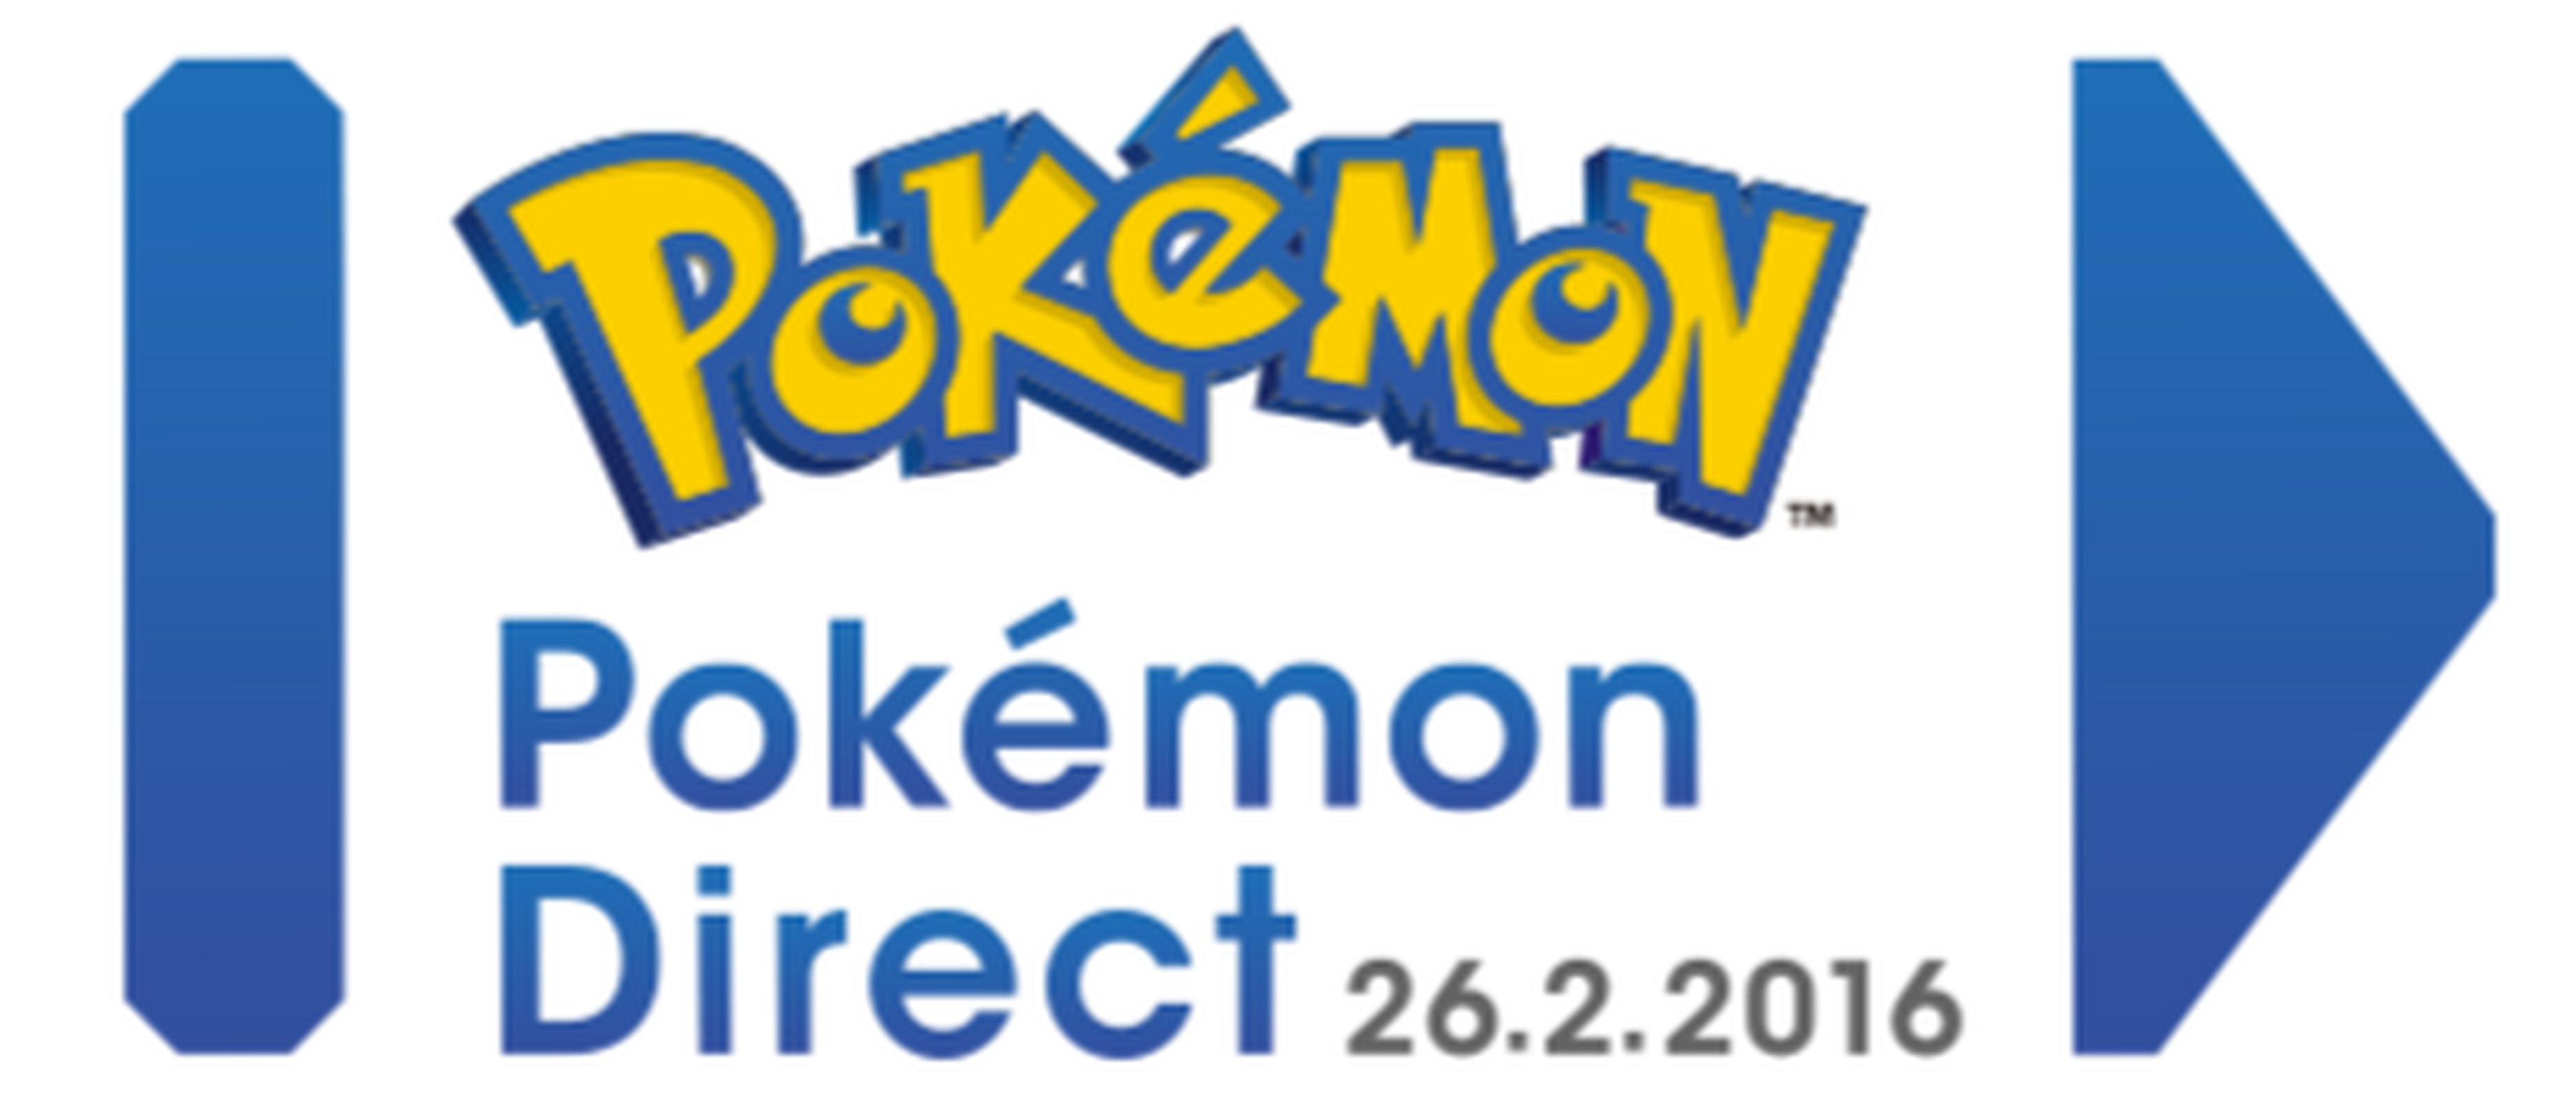 Pokémon Direct el 26 de febrero